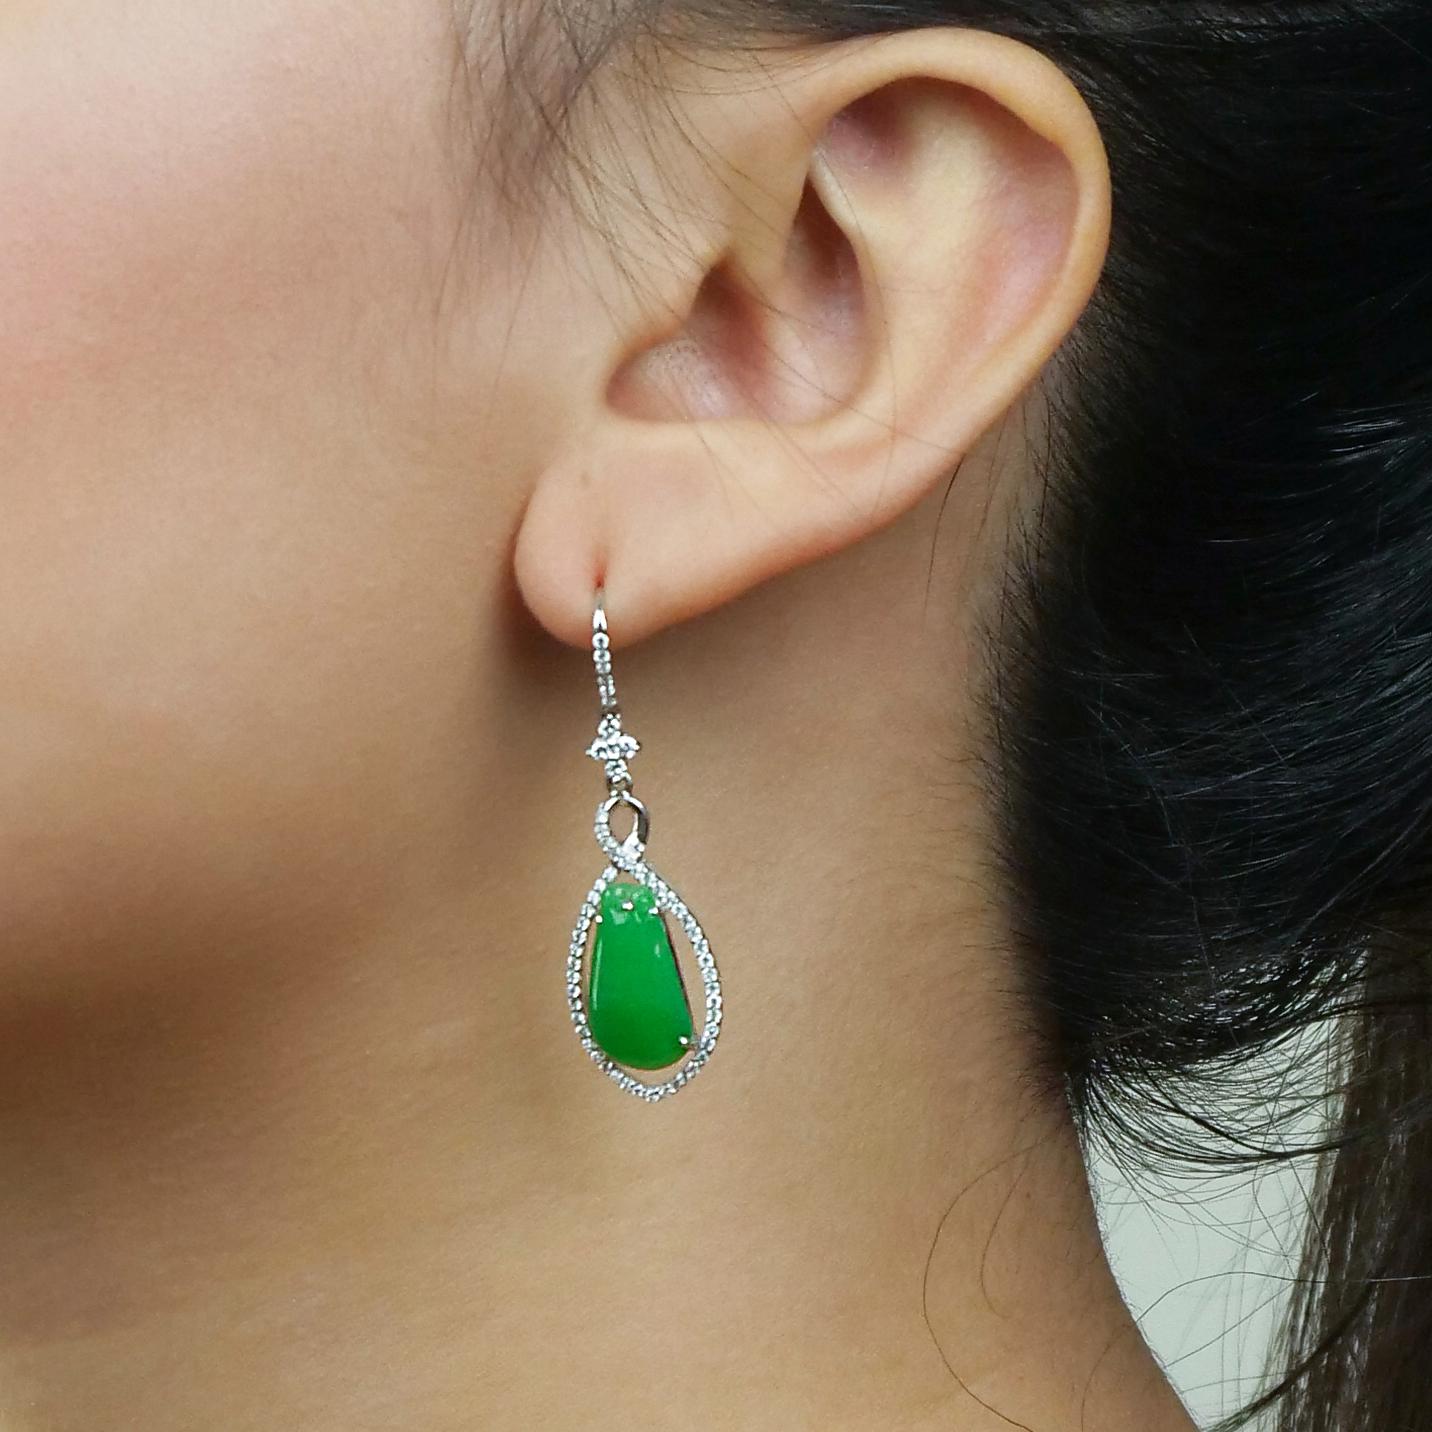 Atemberaubende Ohrringe aus Jade in Birnenform, an denen verschiedene Formen von Kreuzen, Kreisen und vertikalen Linien baumeln, die alle mit glitzernden Diamanten besetzt sind. Die Jade ist ruhig und kühlend und hat einen herrlichen schimmernden